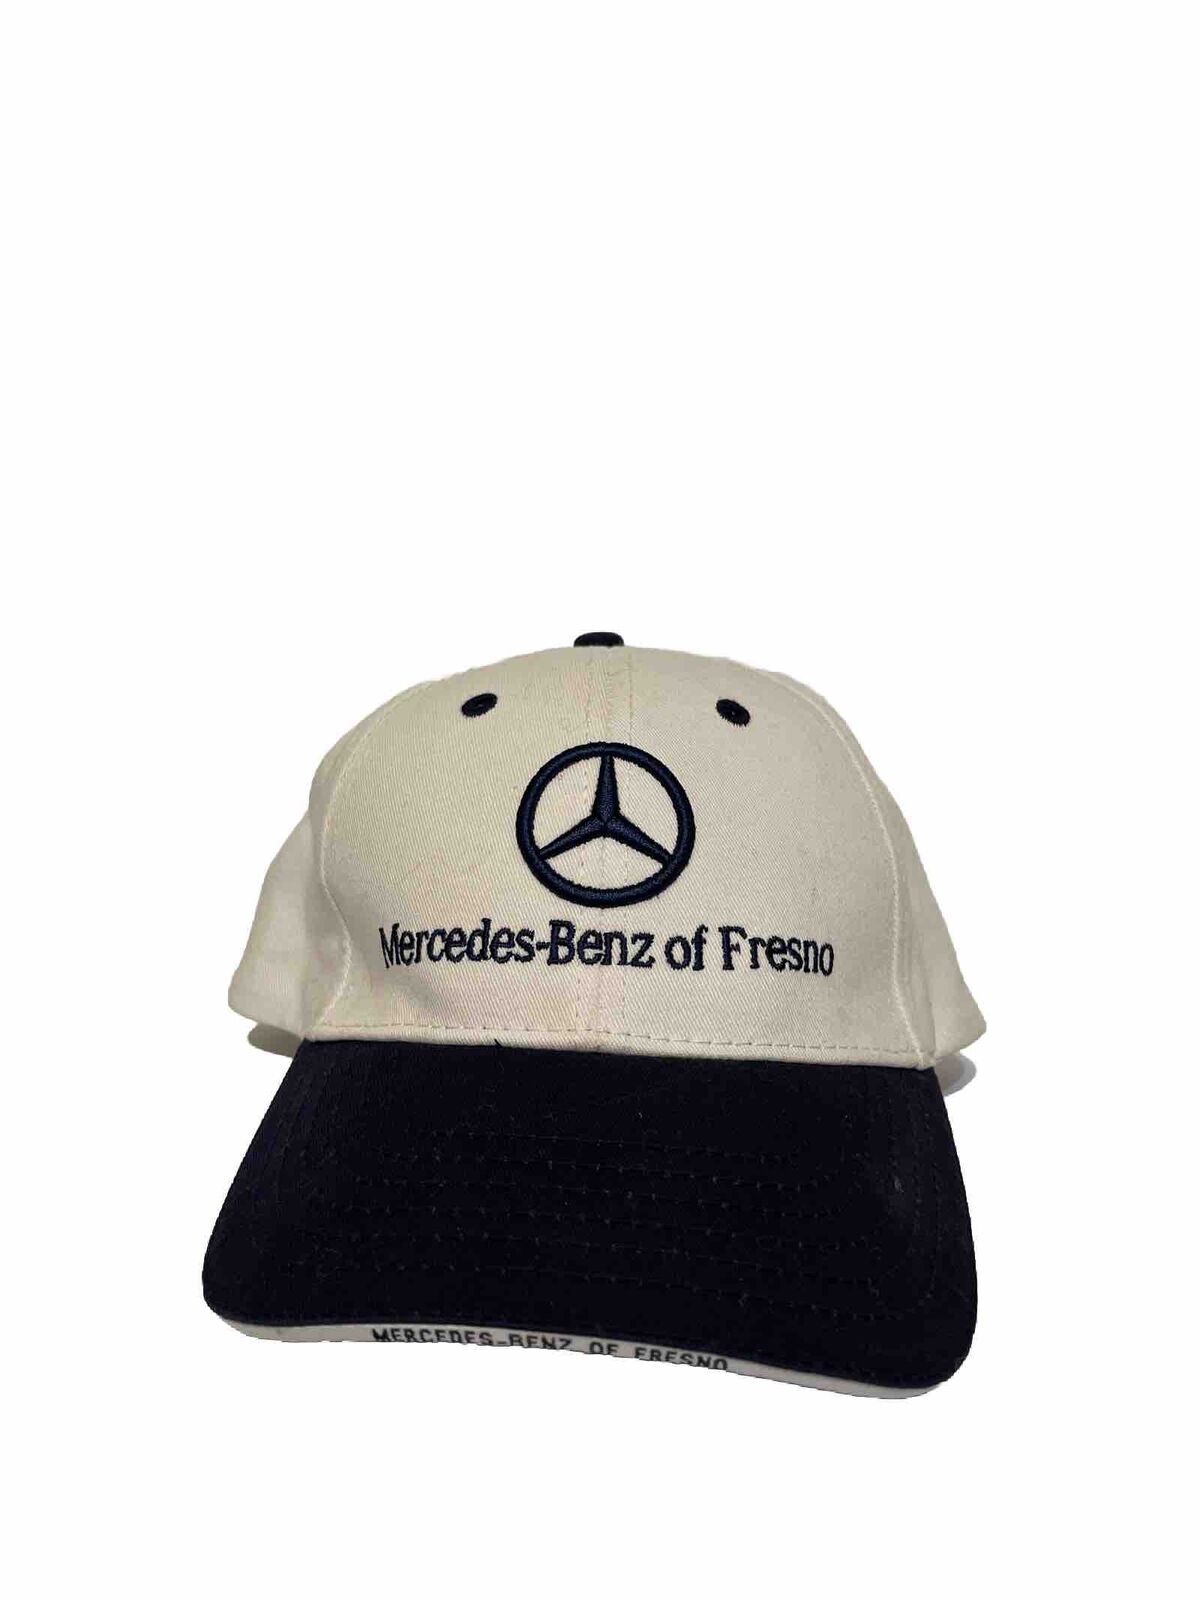 Vintage Mercedes Benz Of Fresno Adjustable Hat 100% Cotton